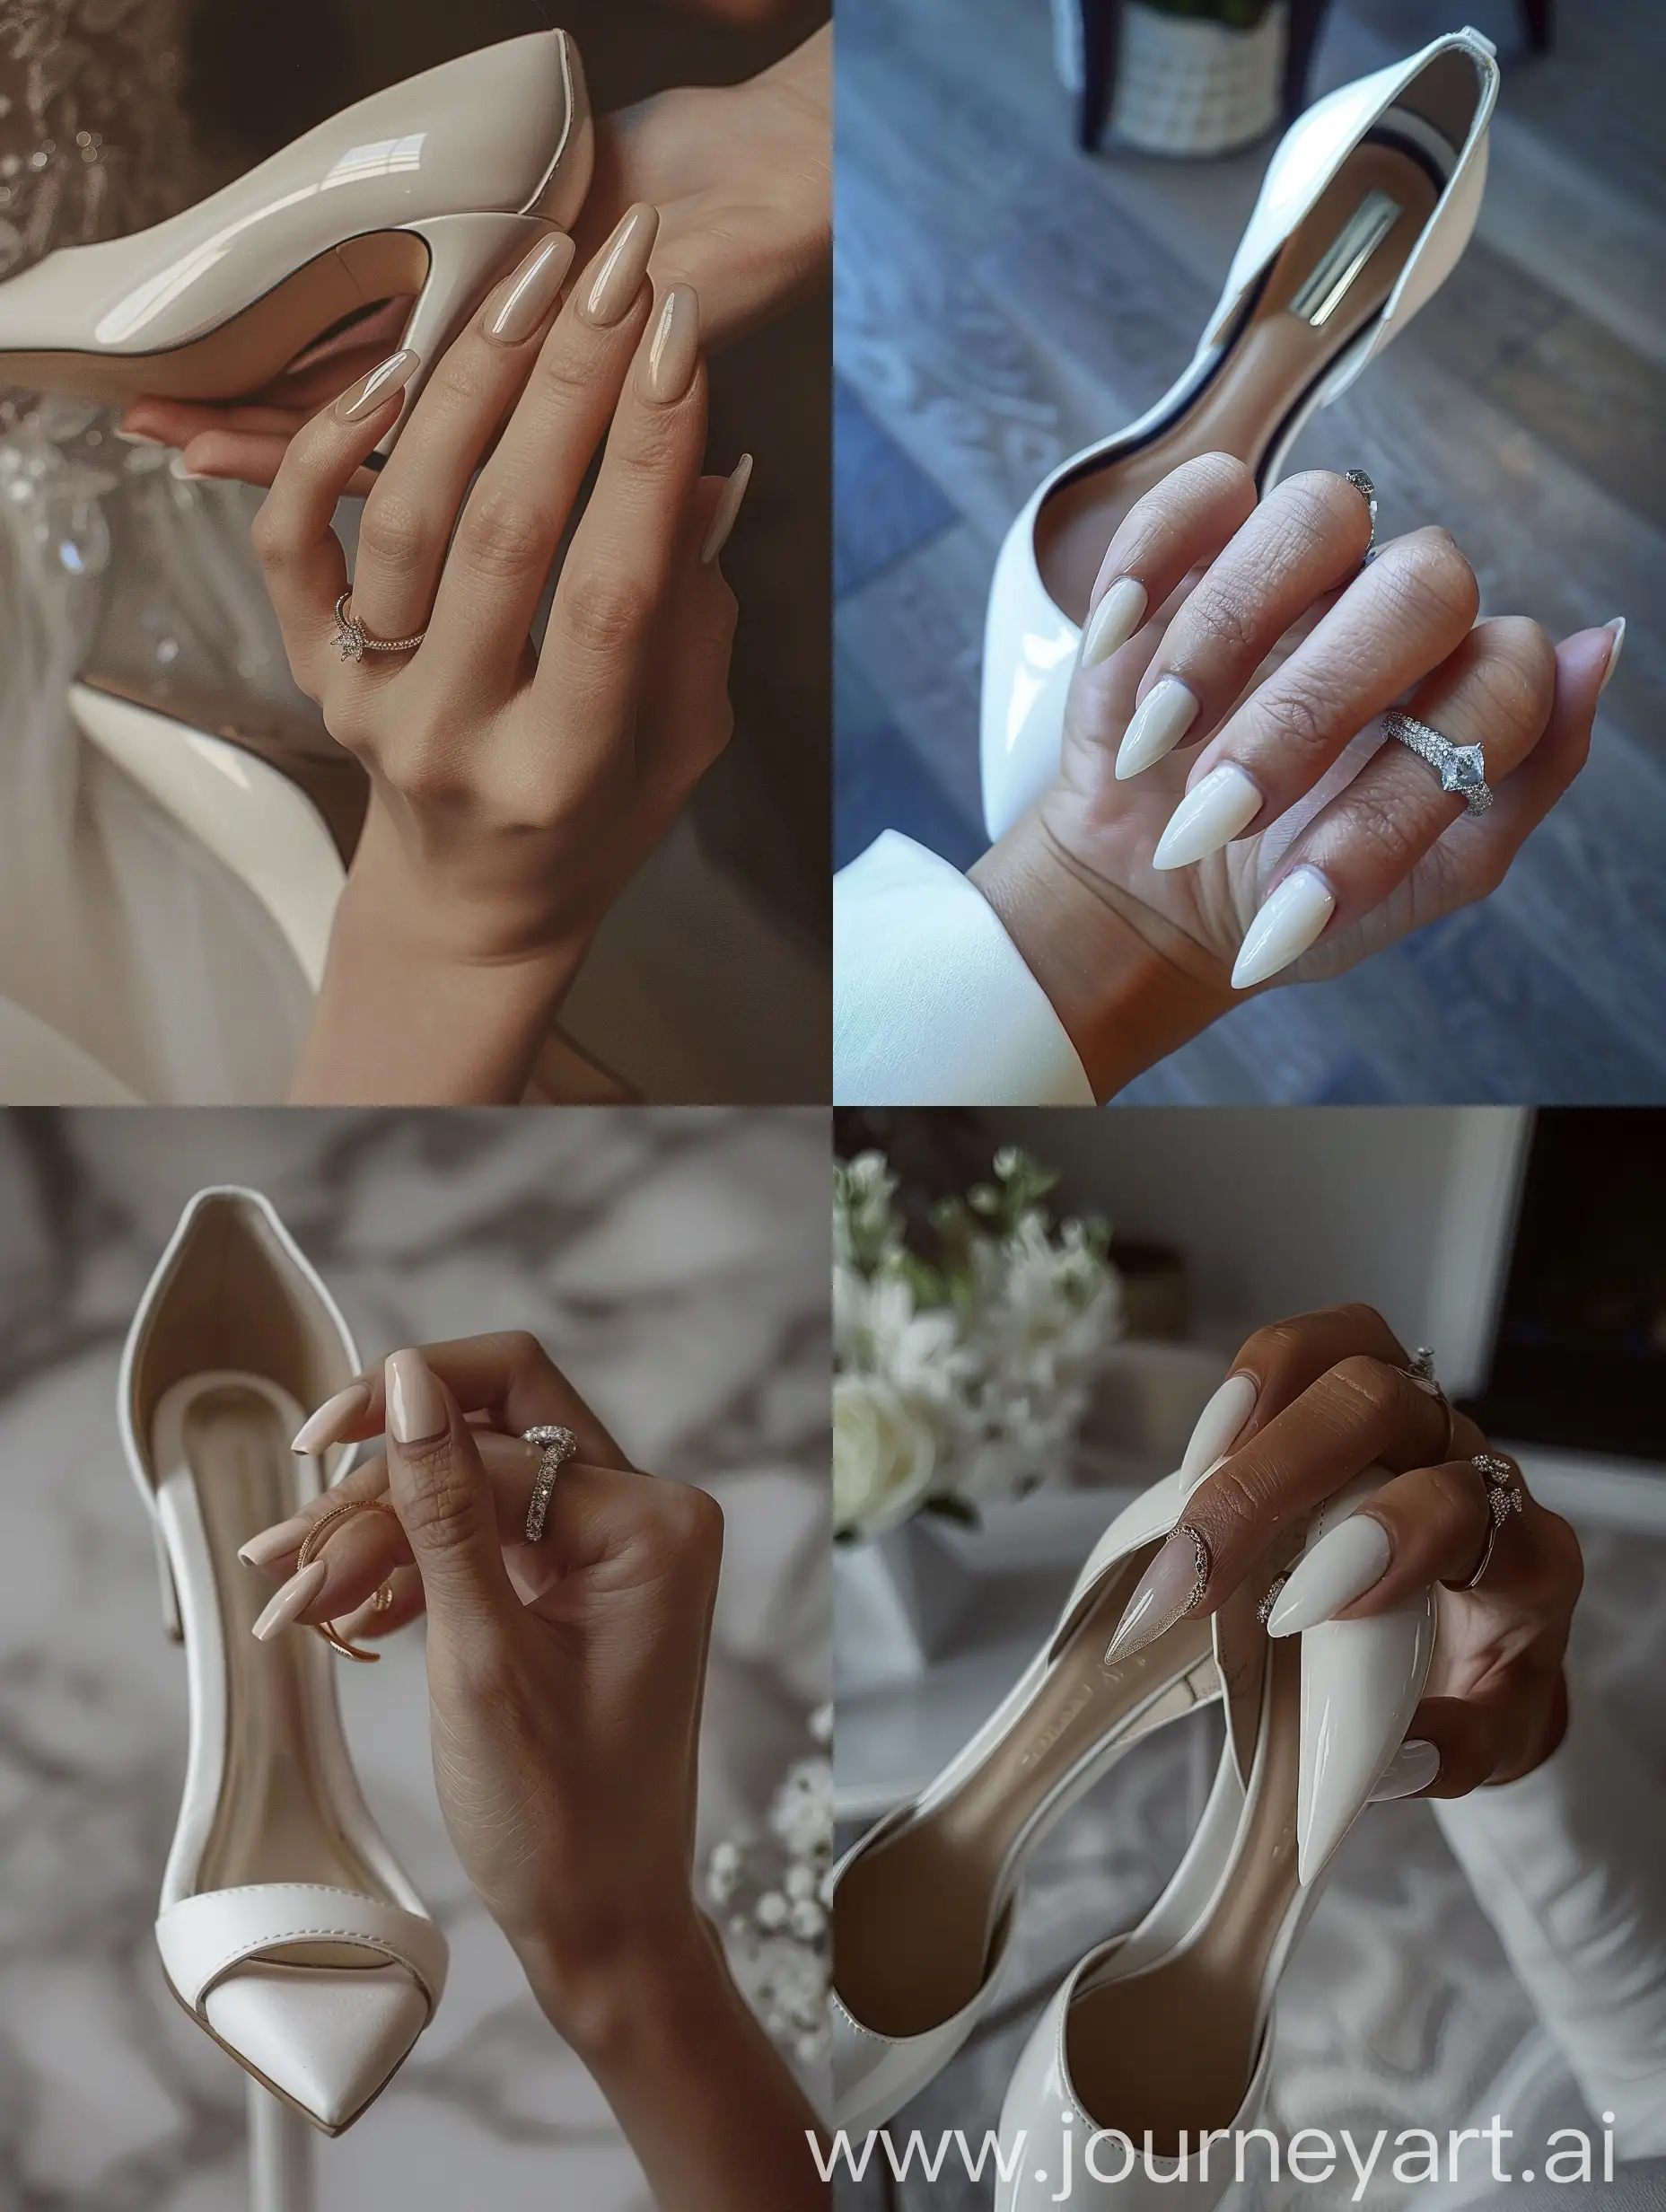 Elegant-Bridal-Style-White-Heels-and-Wedding-Ring-Photo